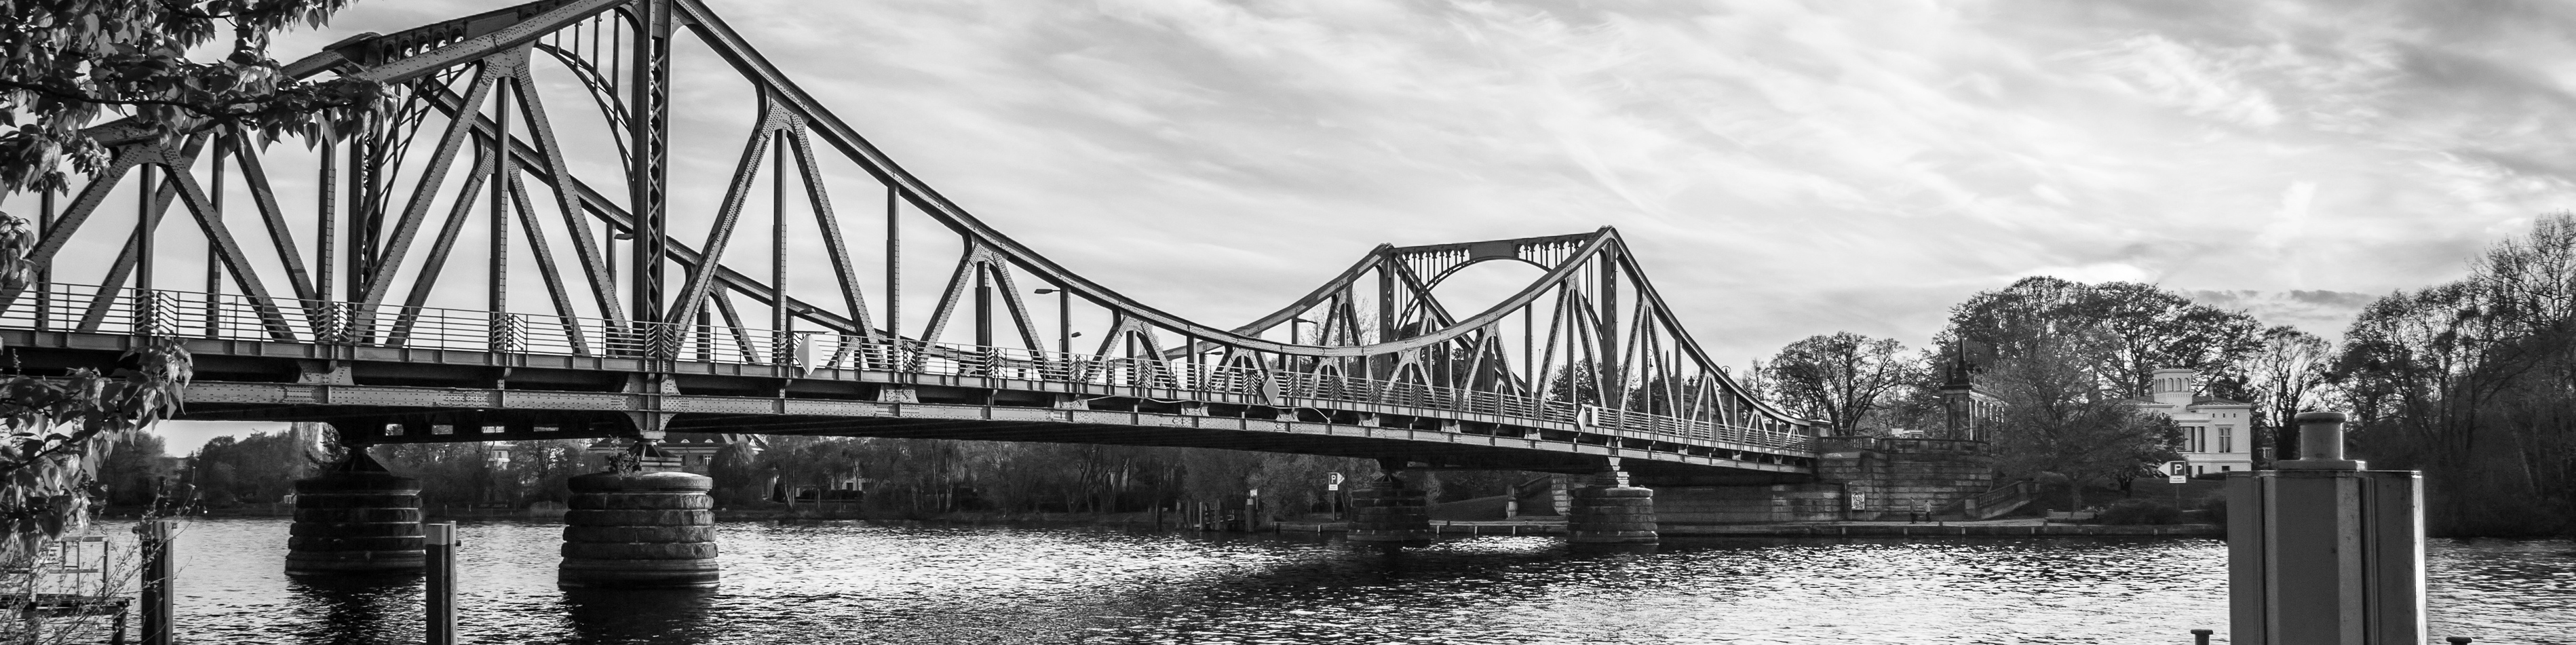 Glienicker Brücke Potsdam